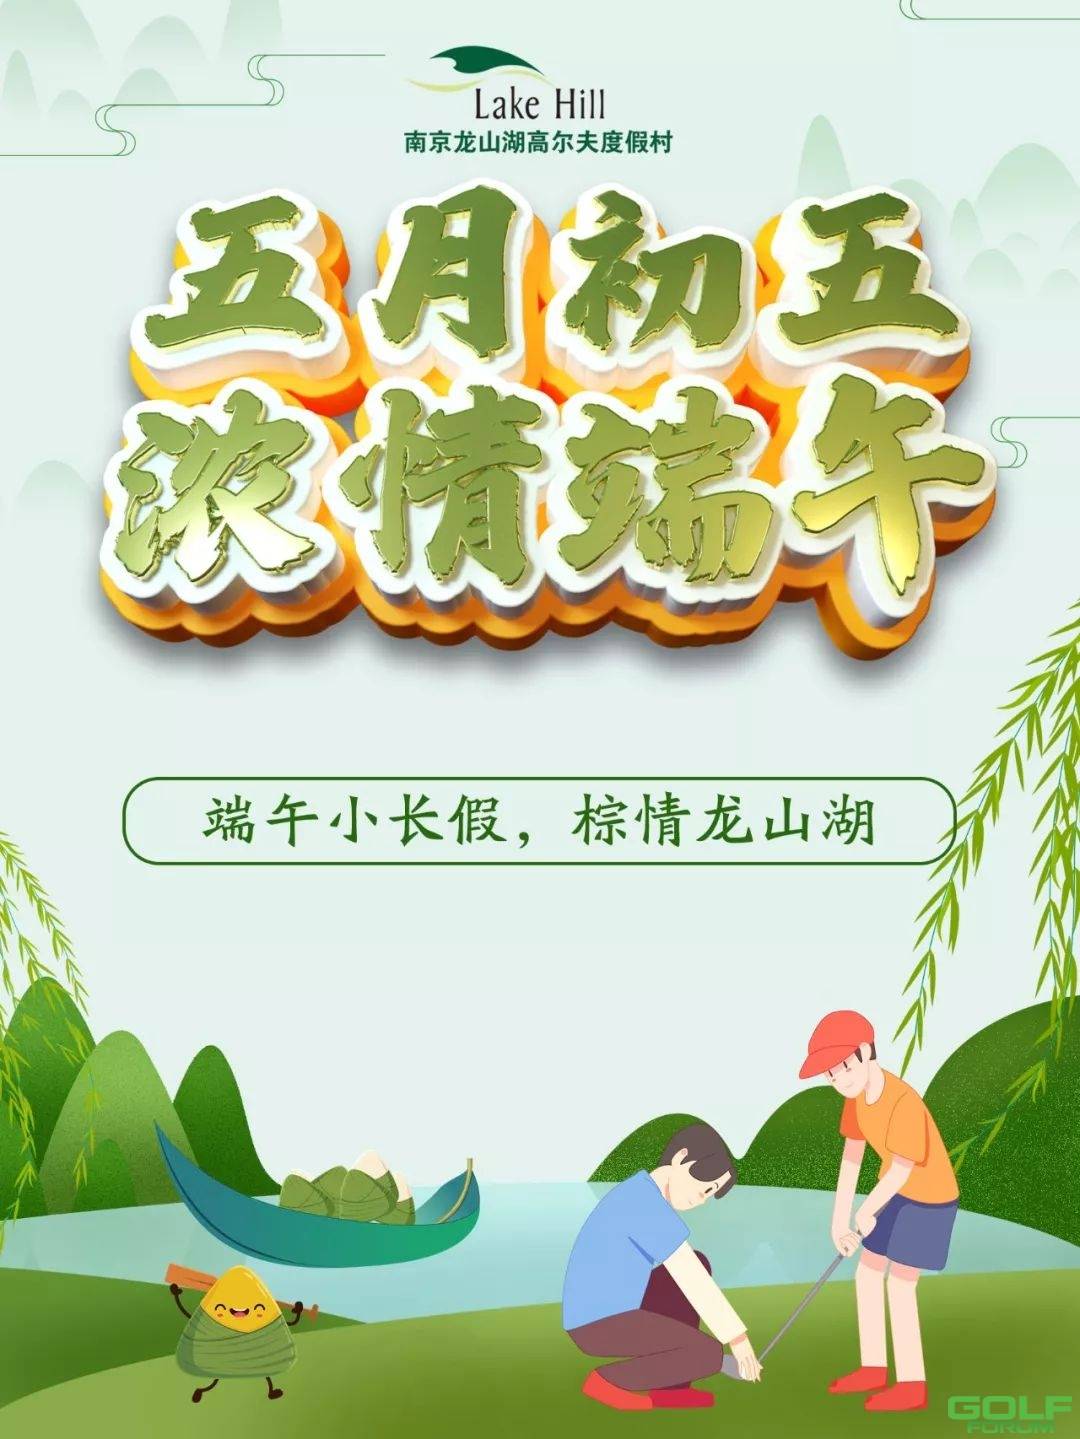 2019年南京龙山湖高尔夫端午节收费标准